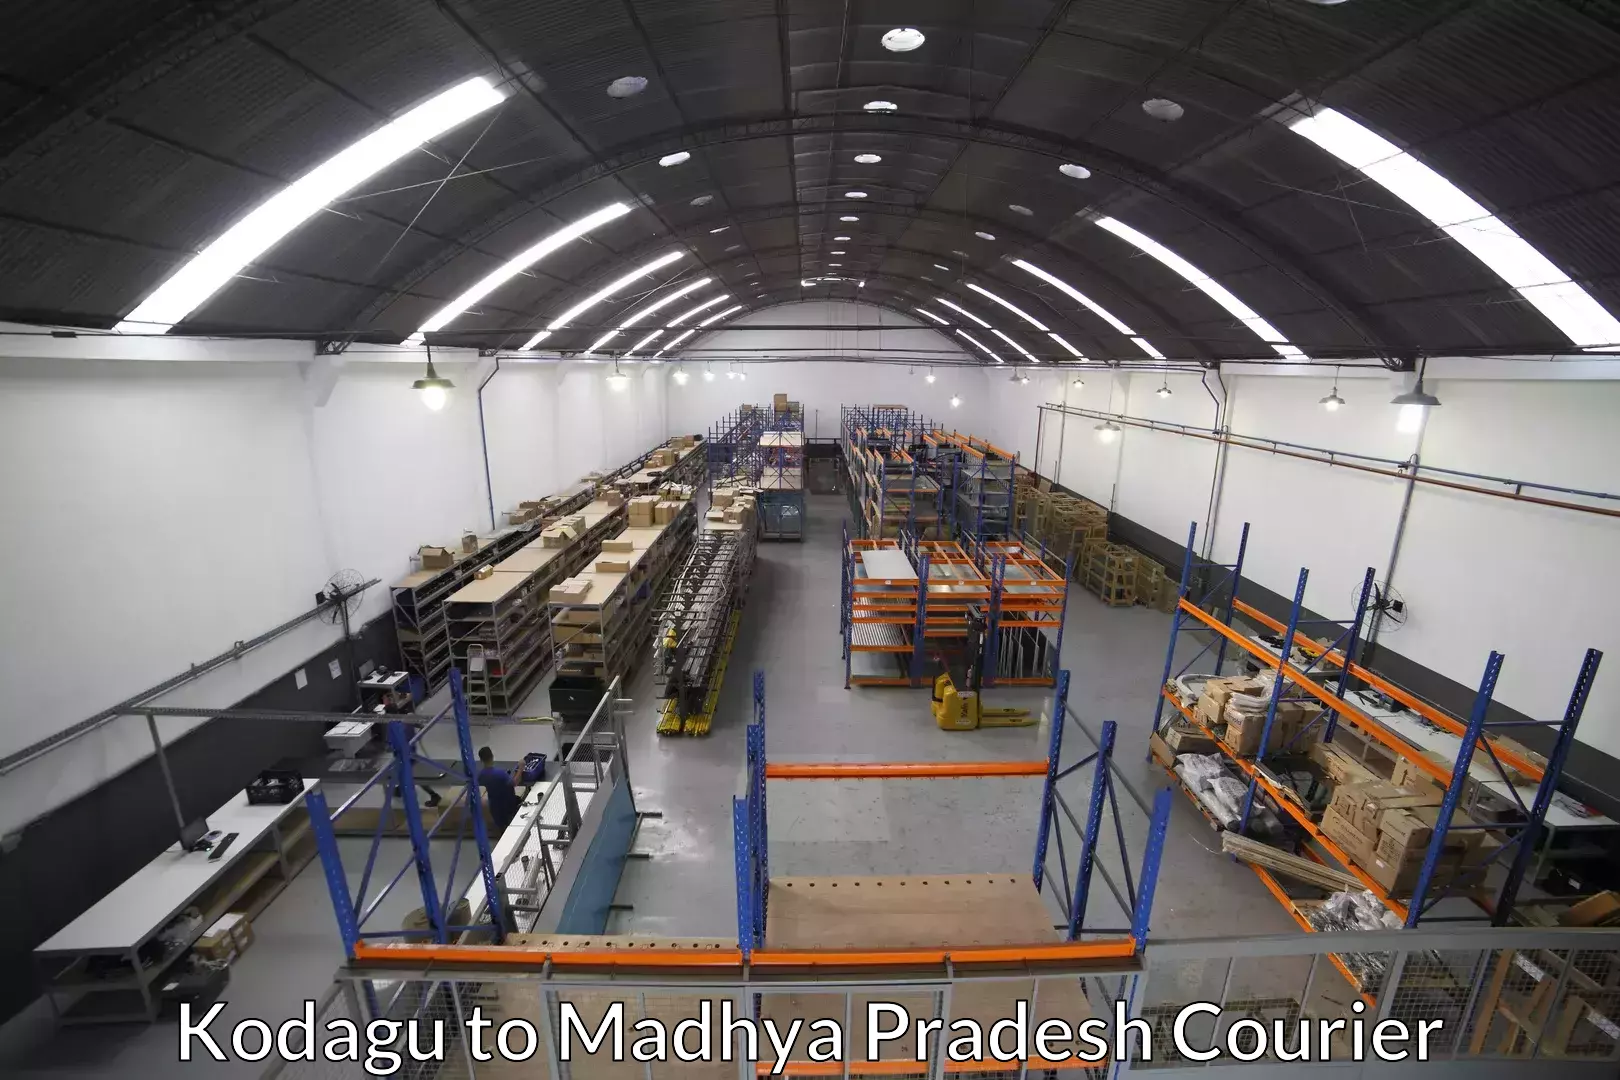 Moving and packing experts Kodagu to Madhya Pradesh